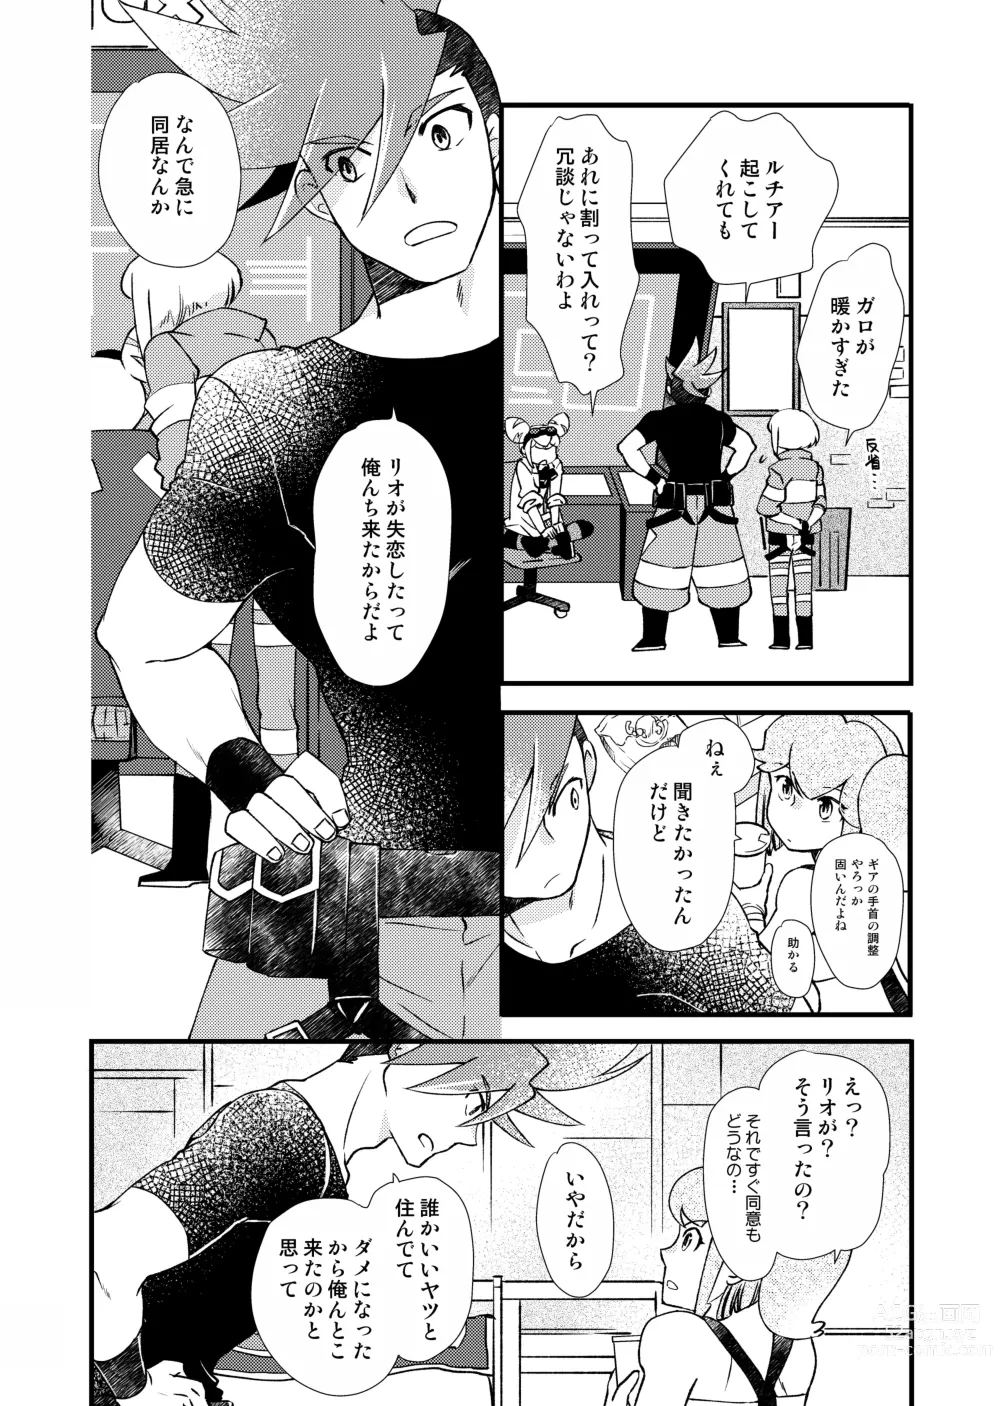 Page 9 of doujinshi Sekai wa Onchi na Utagoe de